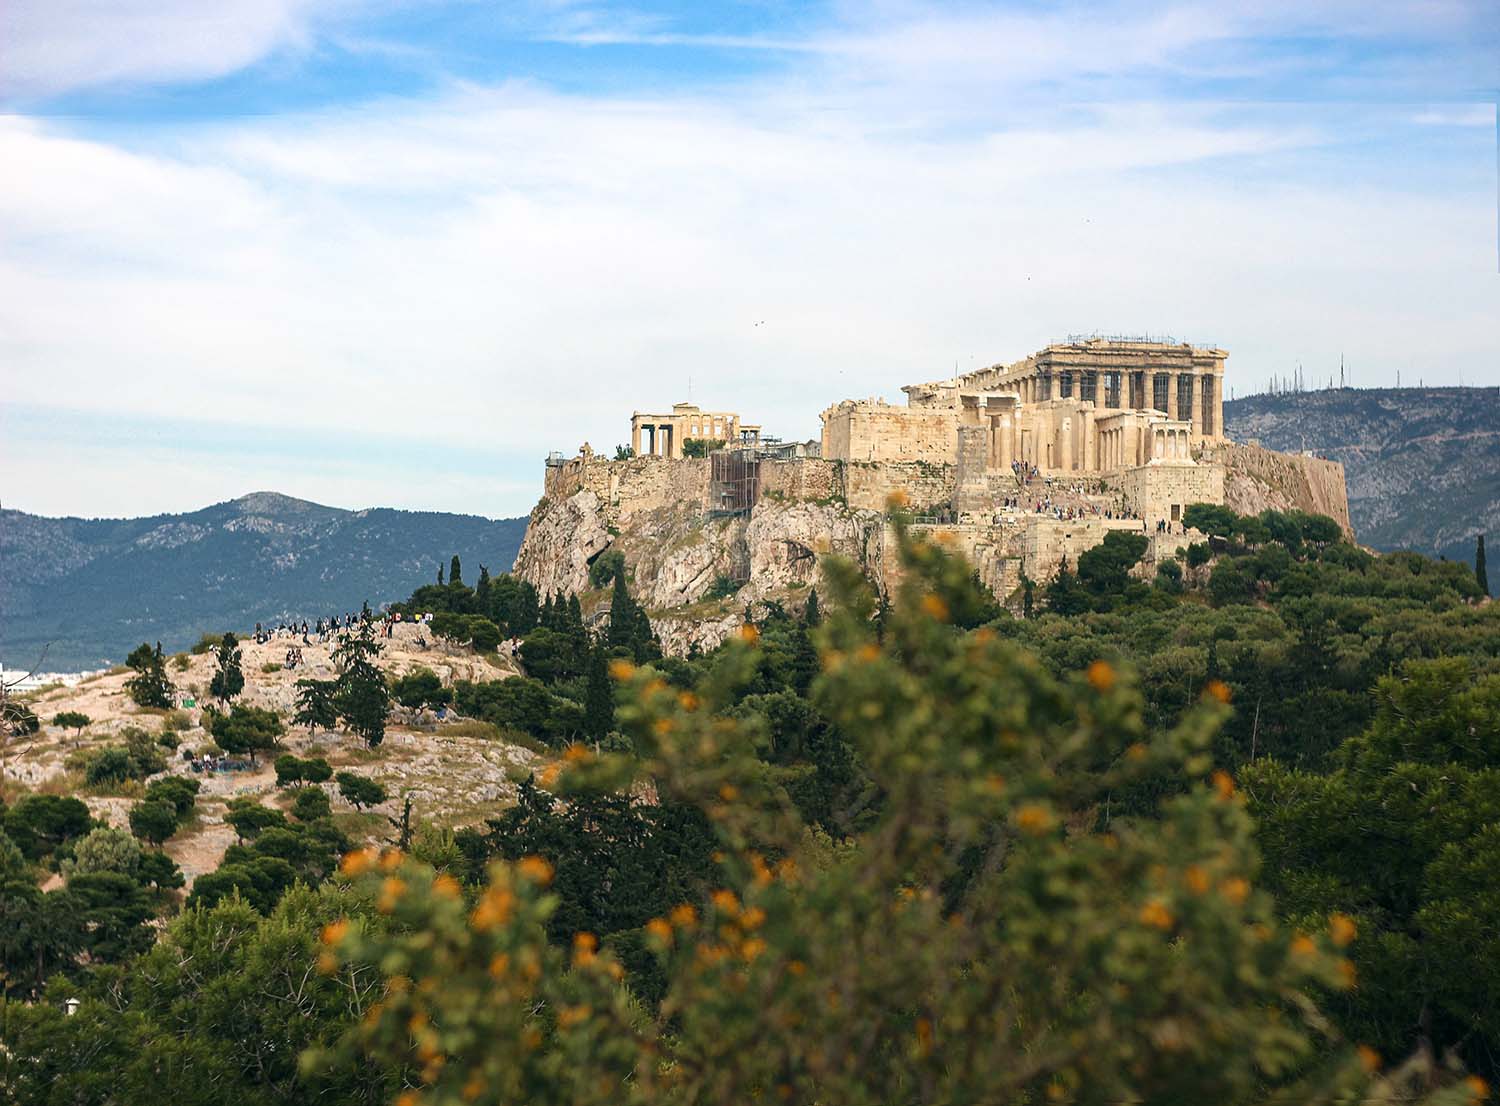 Akropolis Athena